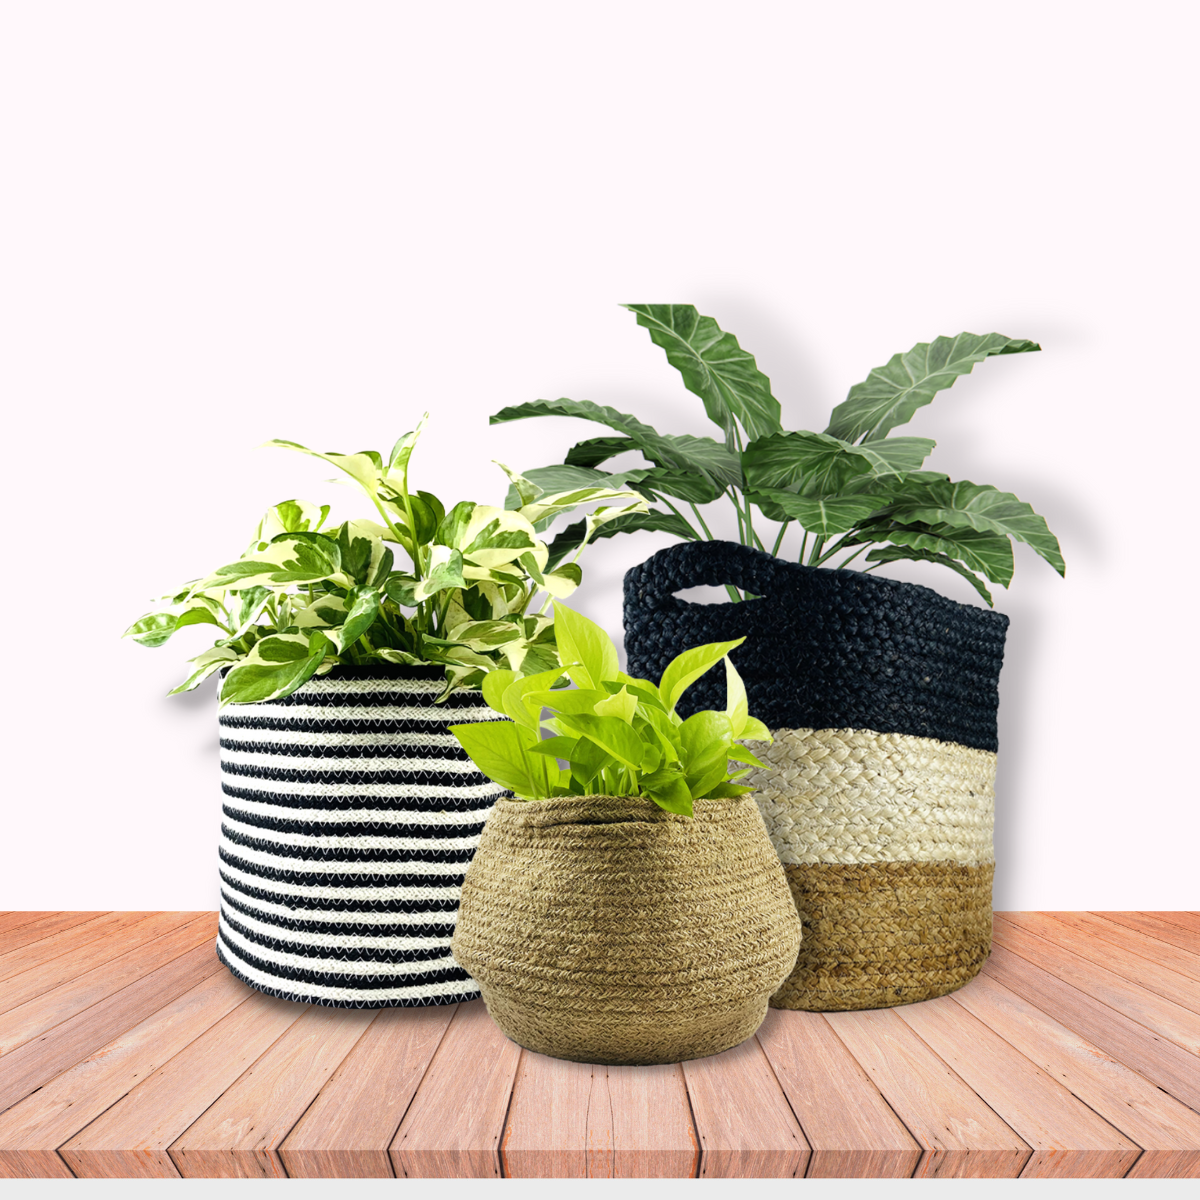 jute bags for plants,jute bag planters